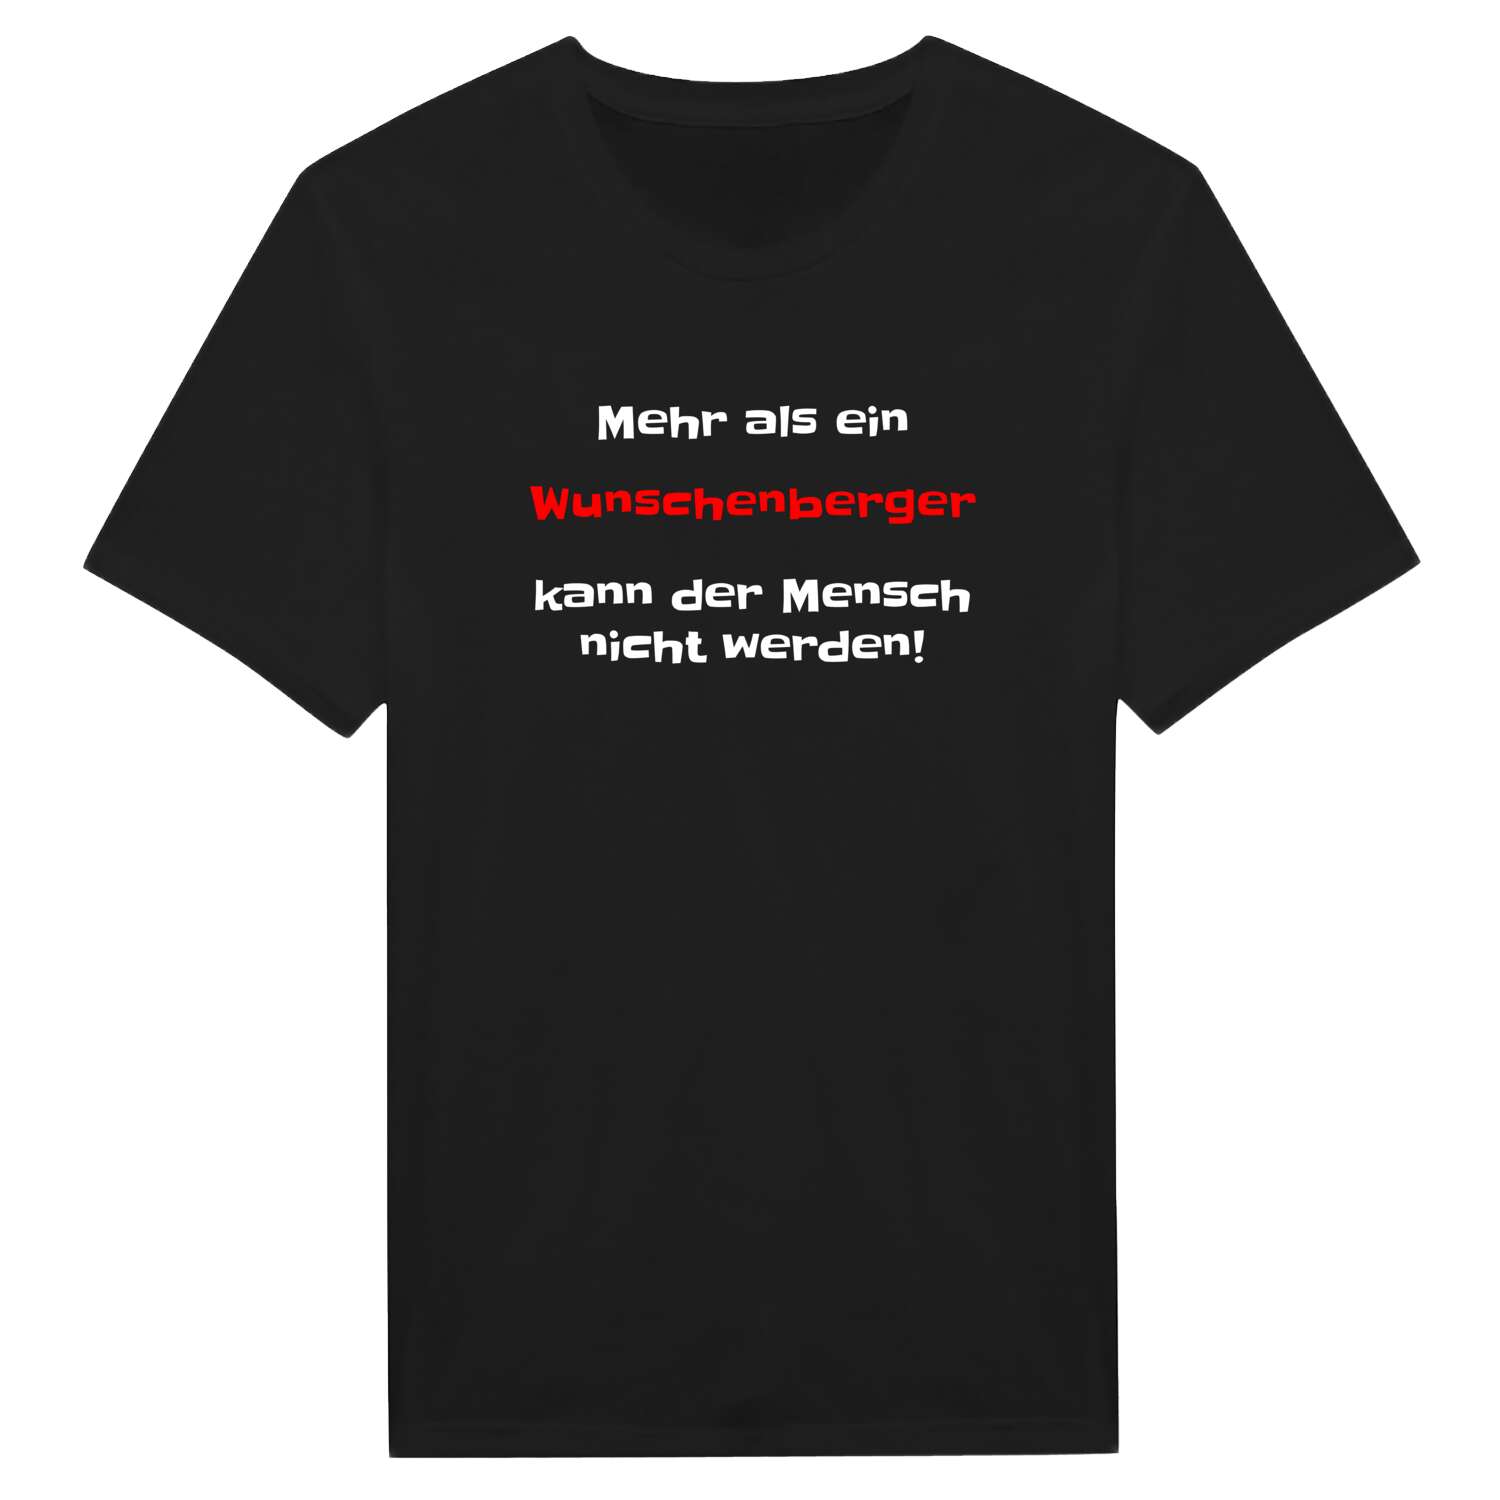 Wunschenberg T-Shirt »Mehr als ein«